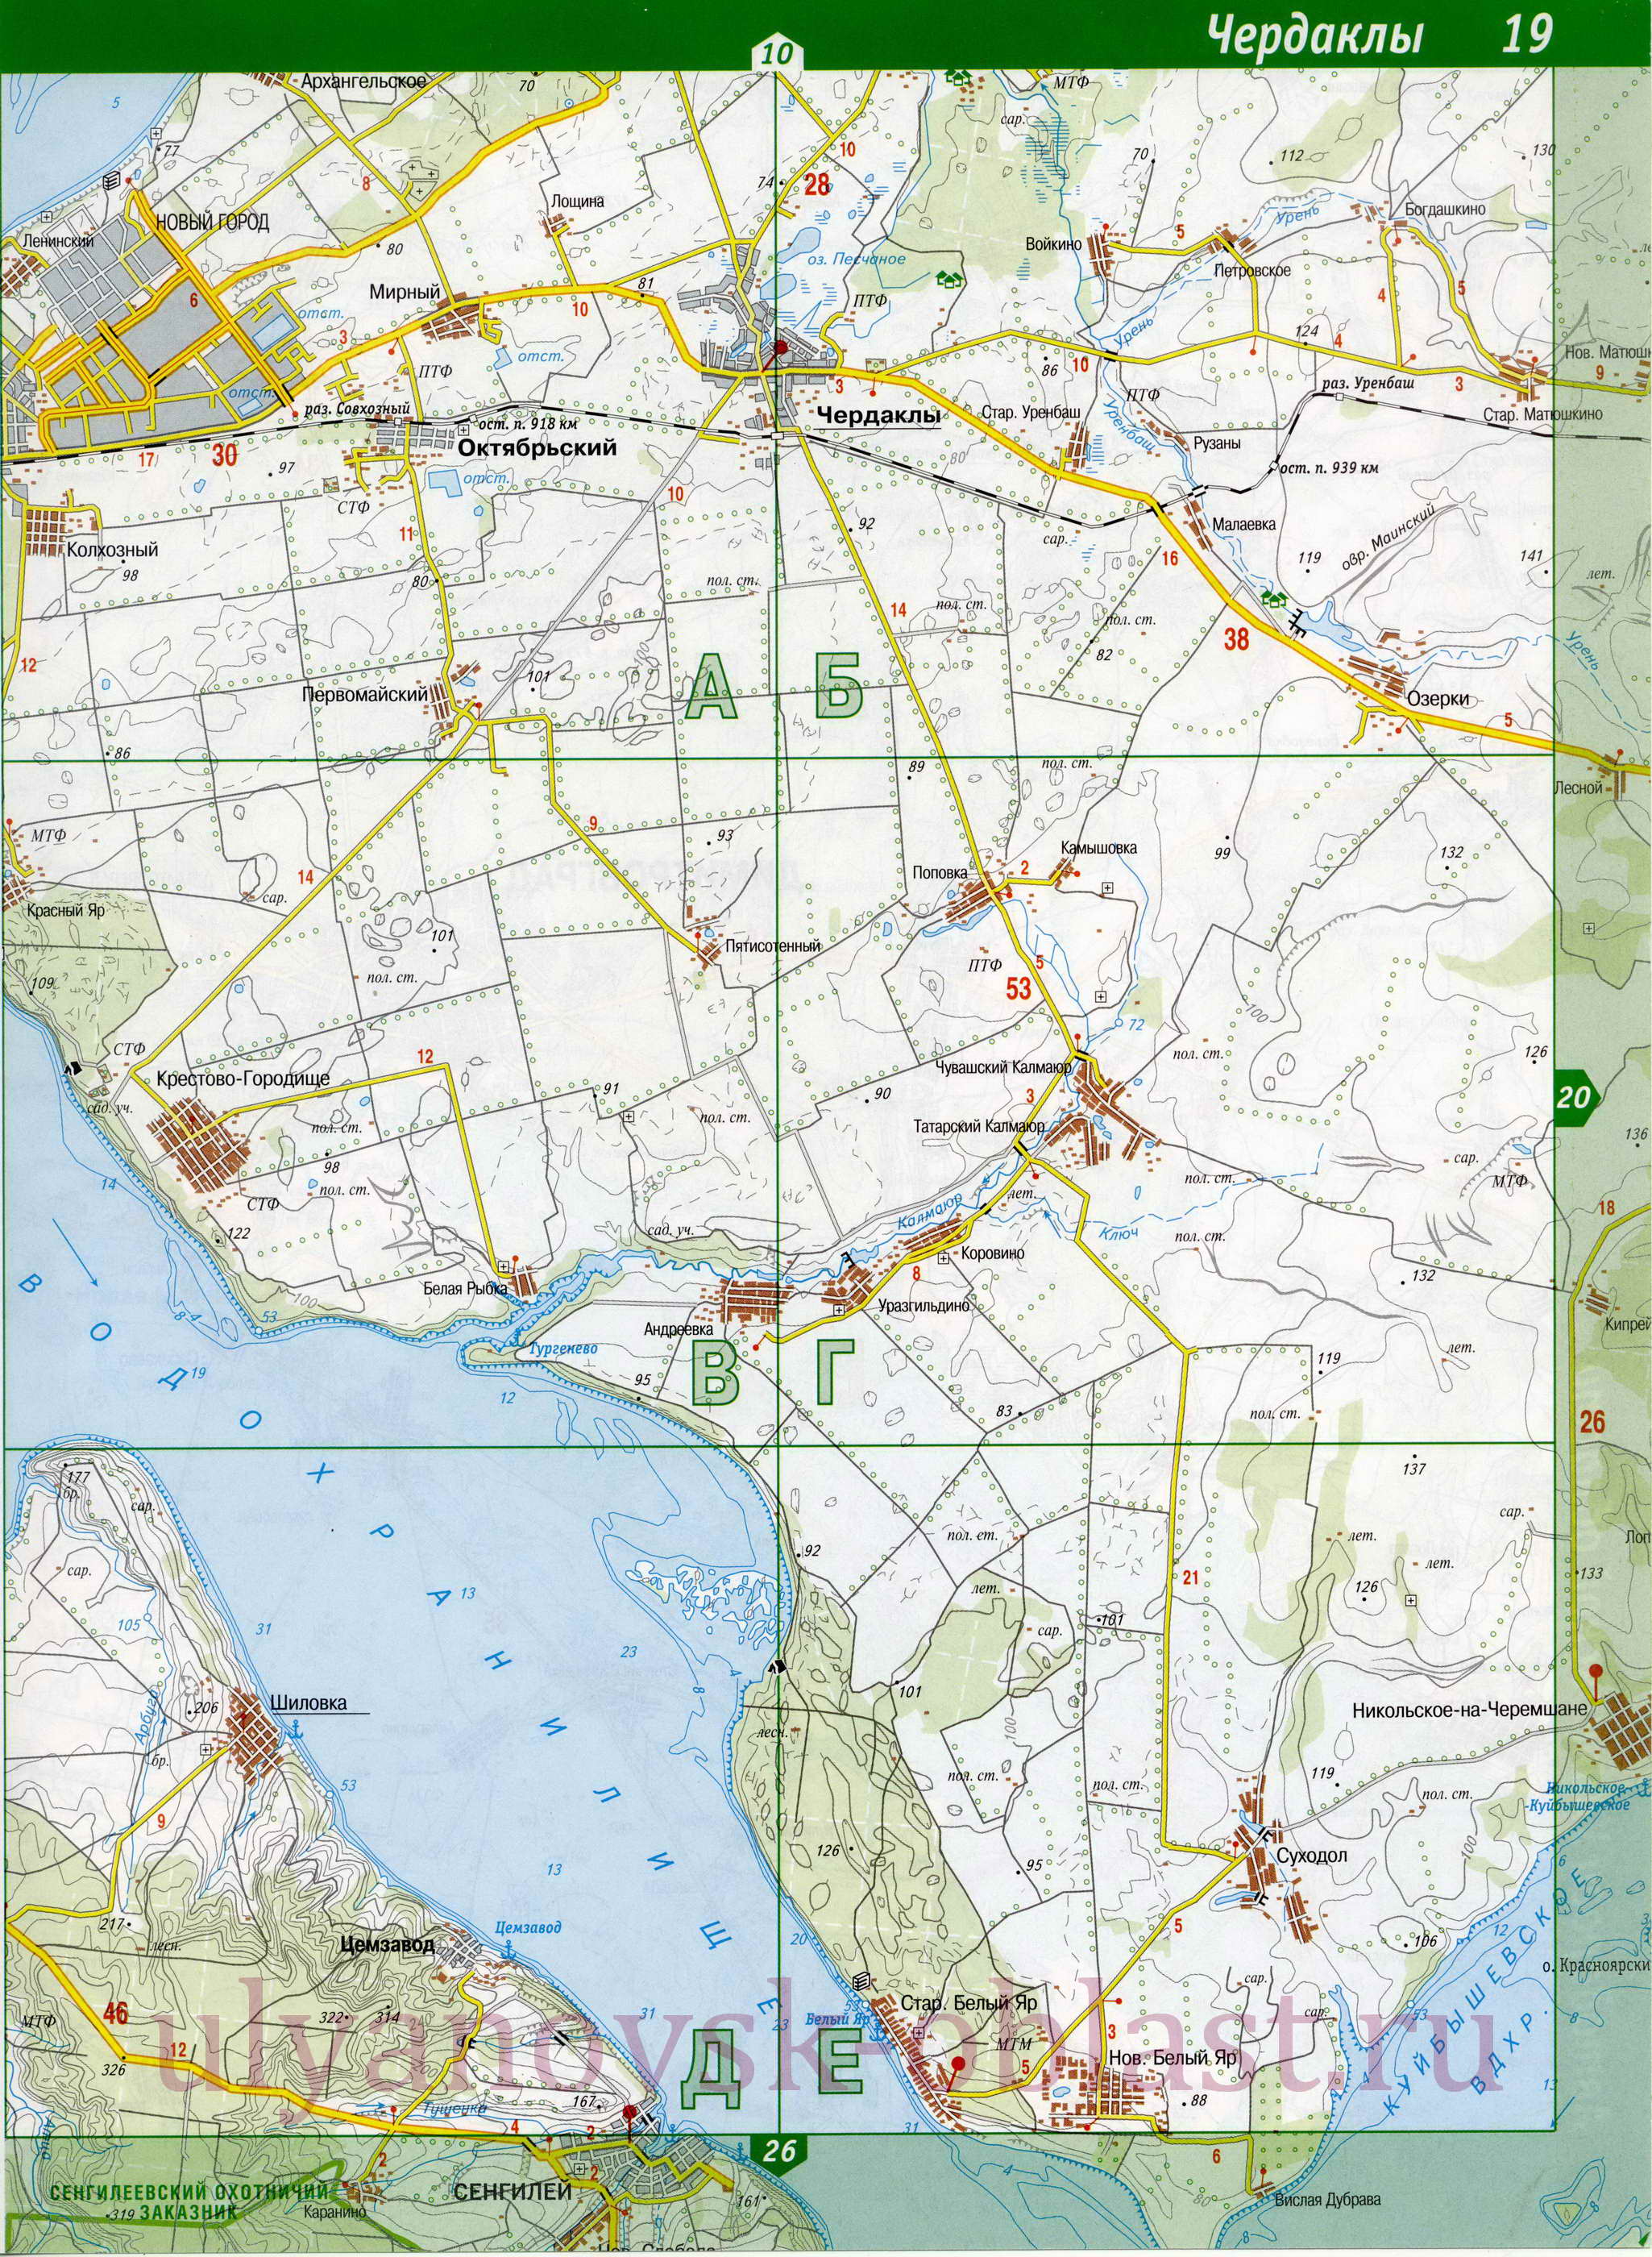 Карта Чердаклинского района Ульяновской области. Подробная топографическая карта - Чердаклинский район, A1 - 